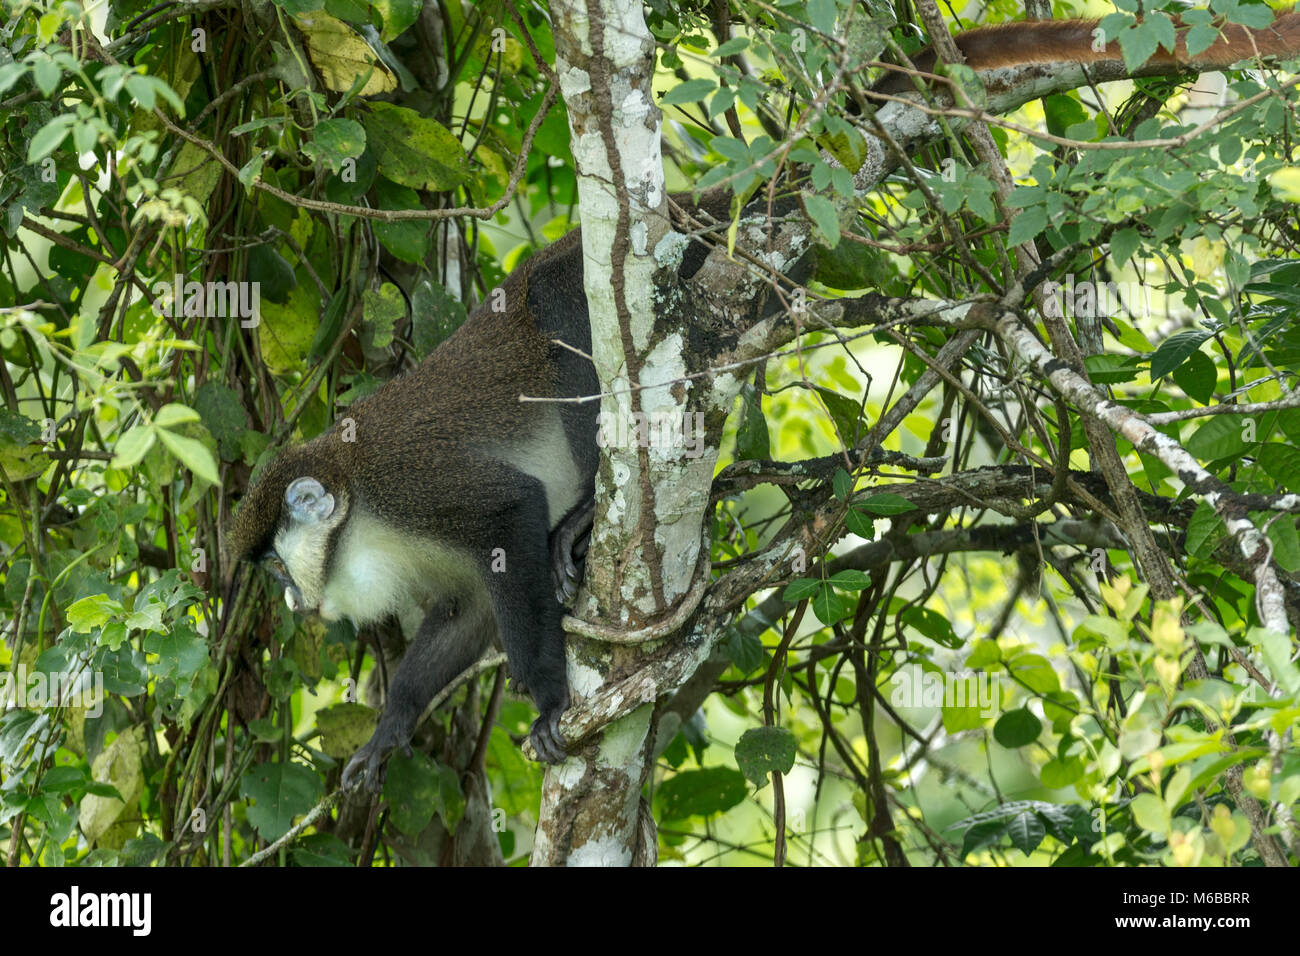 Red-tailed Affe, aka Schwarz ist weiß-gerochene Affe, Red-tailed guenon, redtail Affen oder Schmidt's guenon (Cercopithecus ascanius) Königin Elizabe Stockfoto